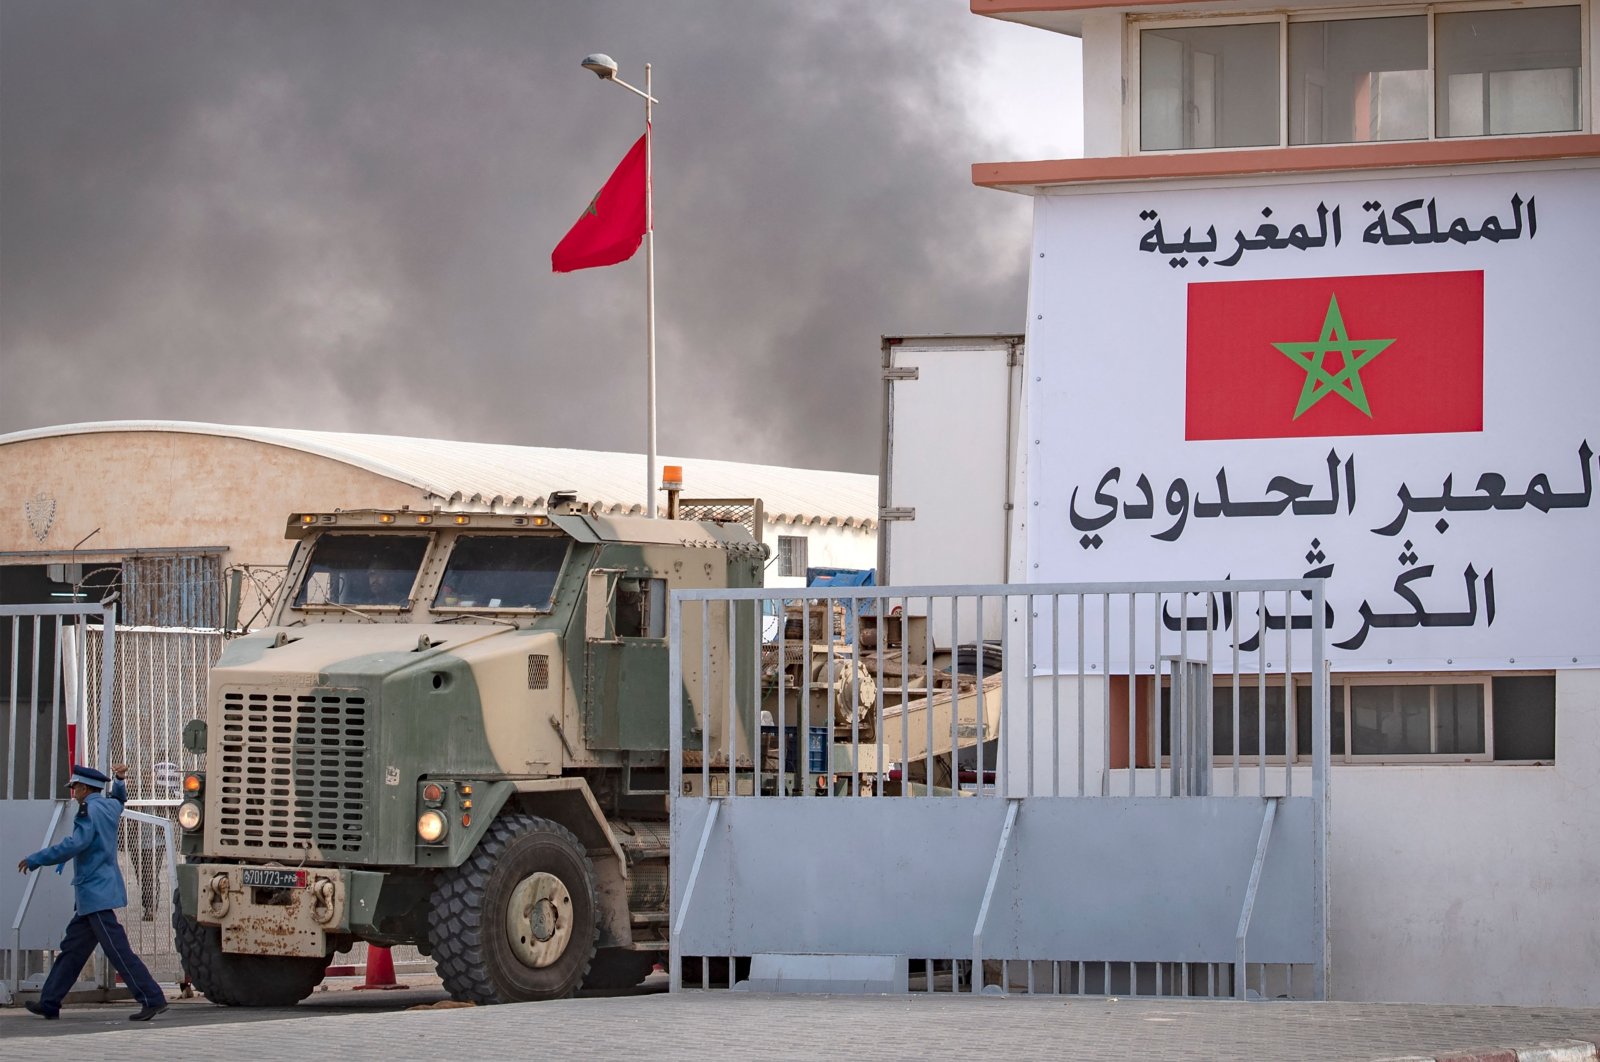 هلال: قرار مجلس الأمن أسقط أكذوبة حرب “هوليودية” بالصحراء المغربية